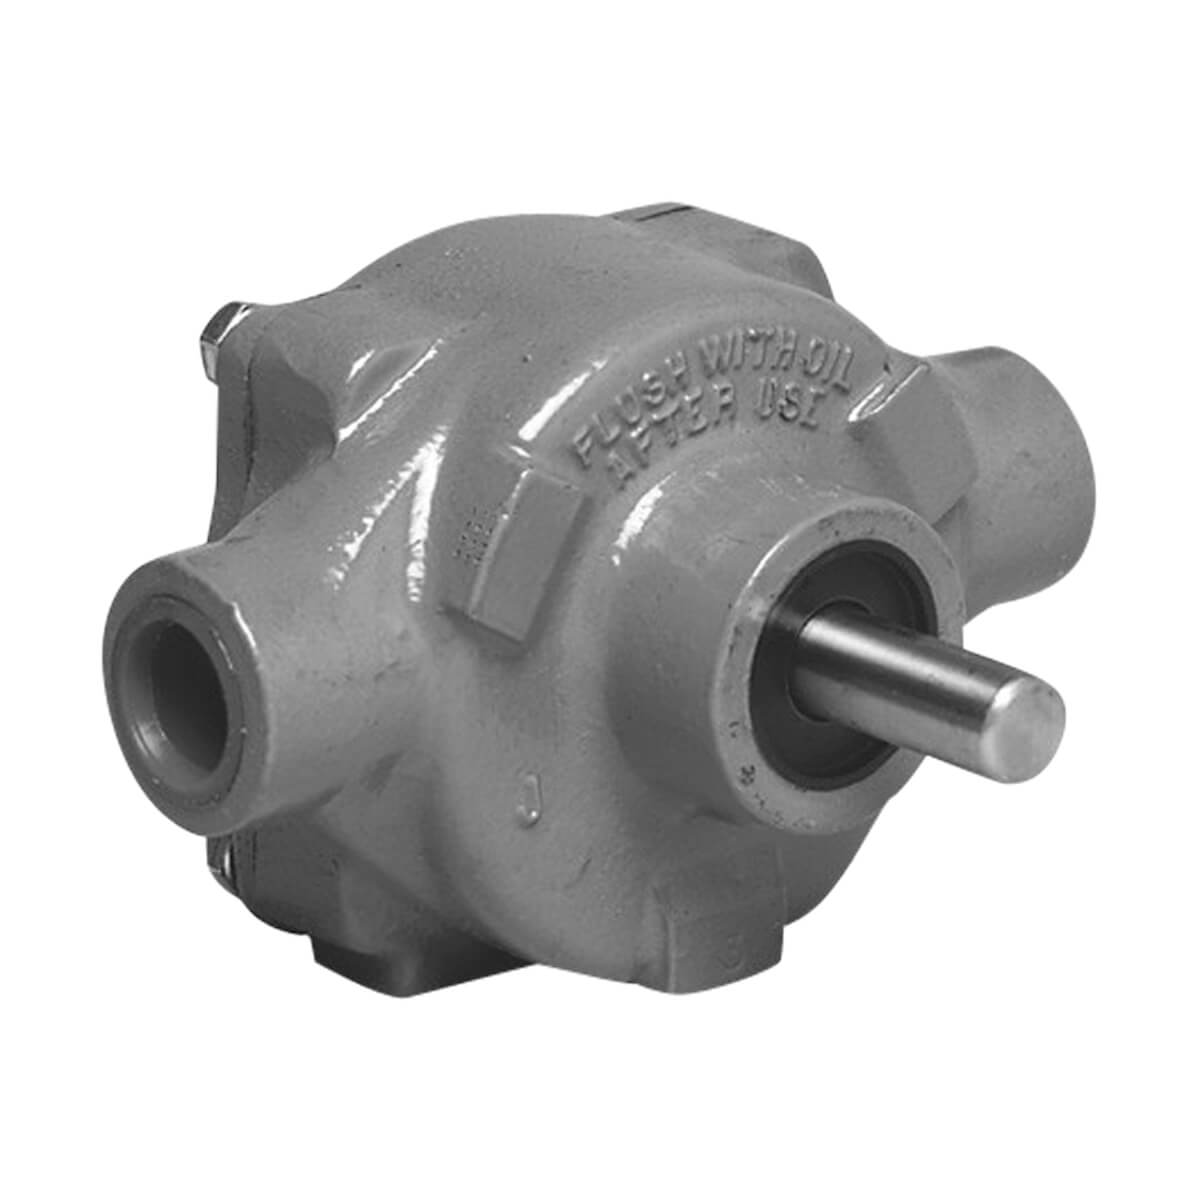 Hypro Roller Pumps - 1700C